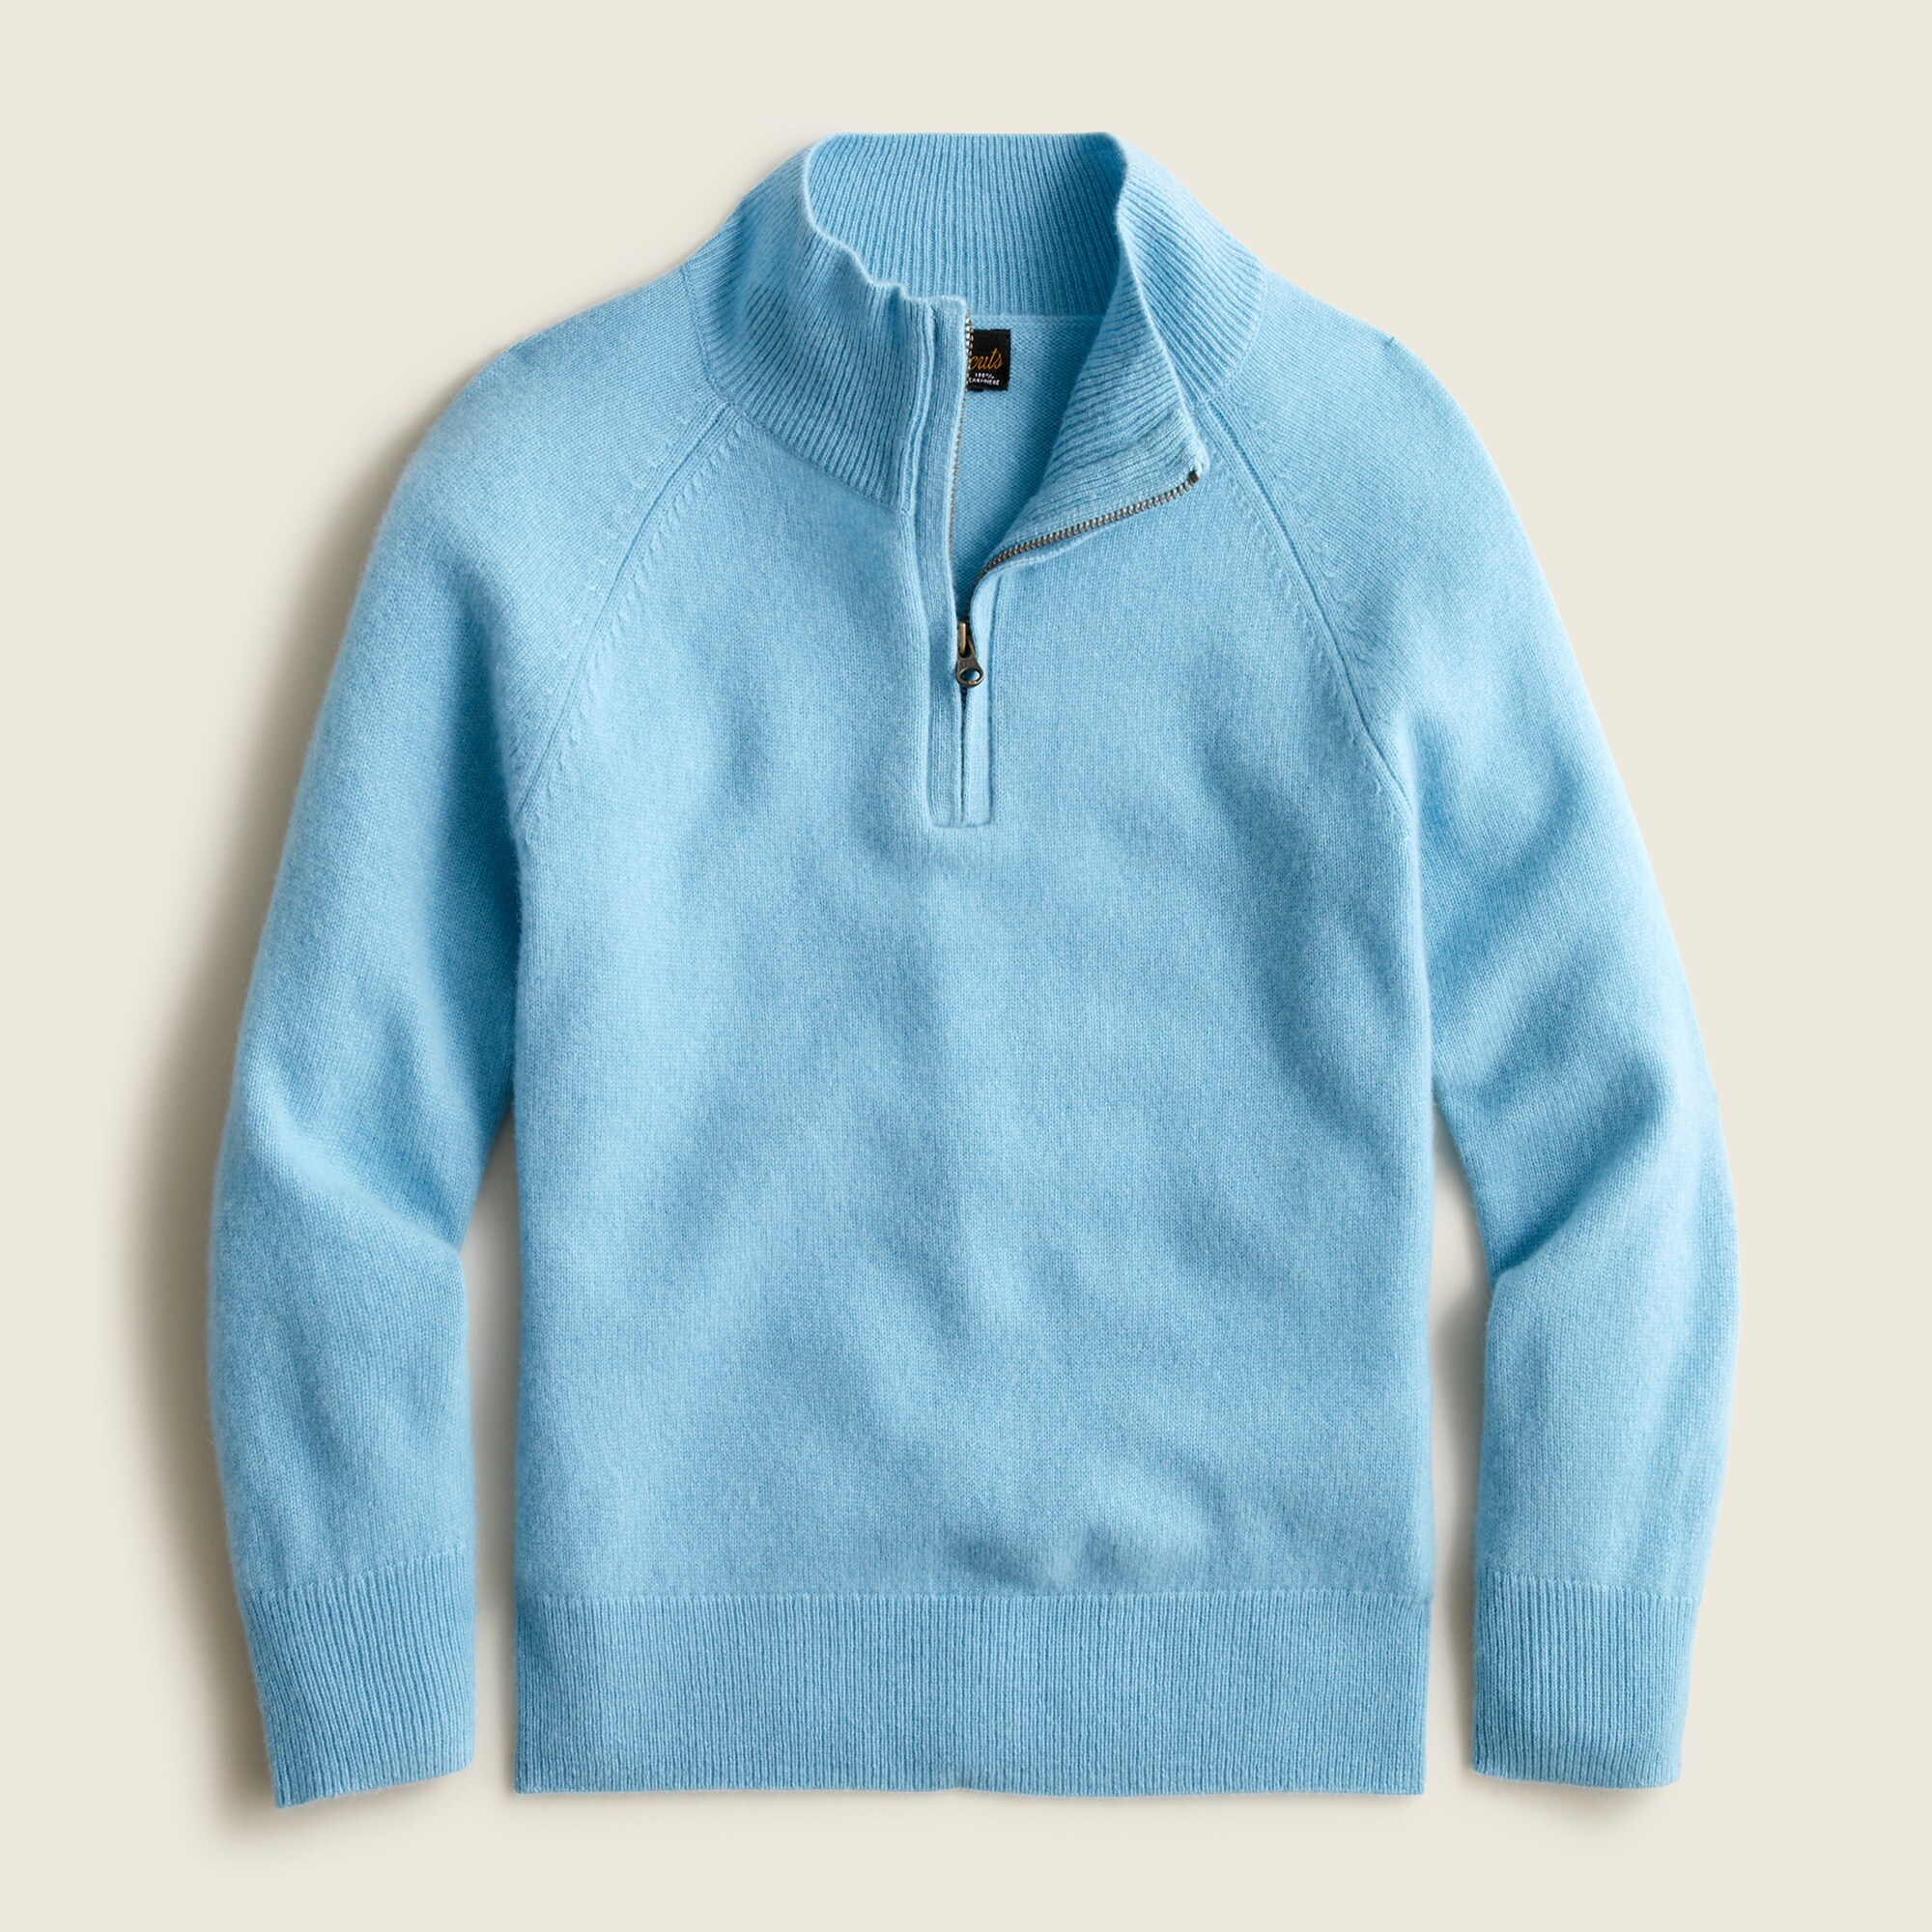 제이크루 보이즈 스웨터 J.crew Boys cashmere half-zip sweater,PORTICO BLUE